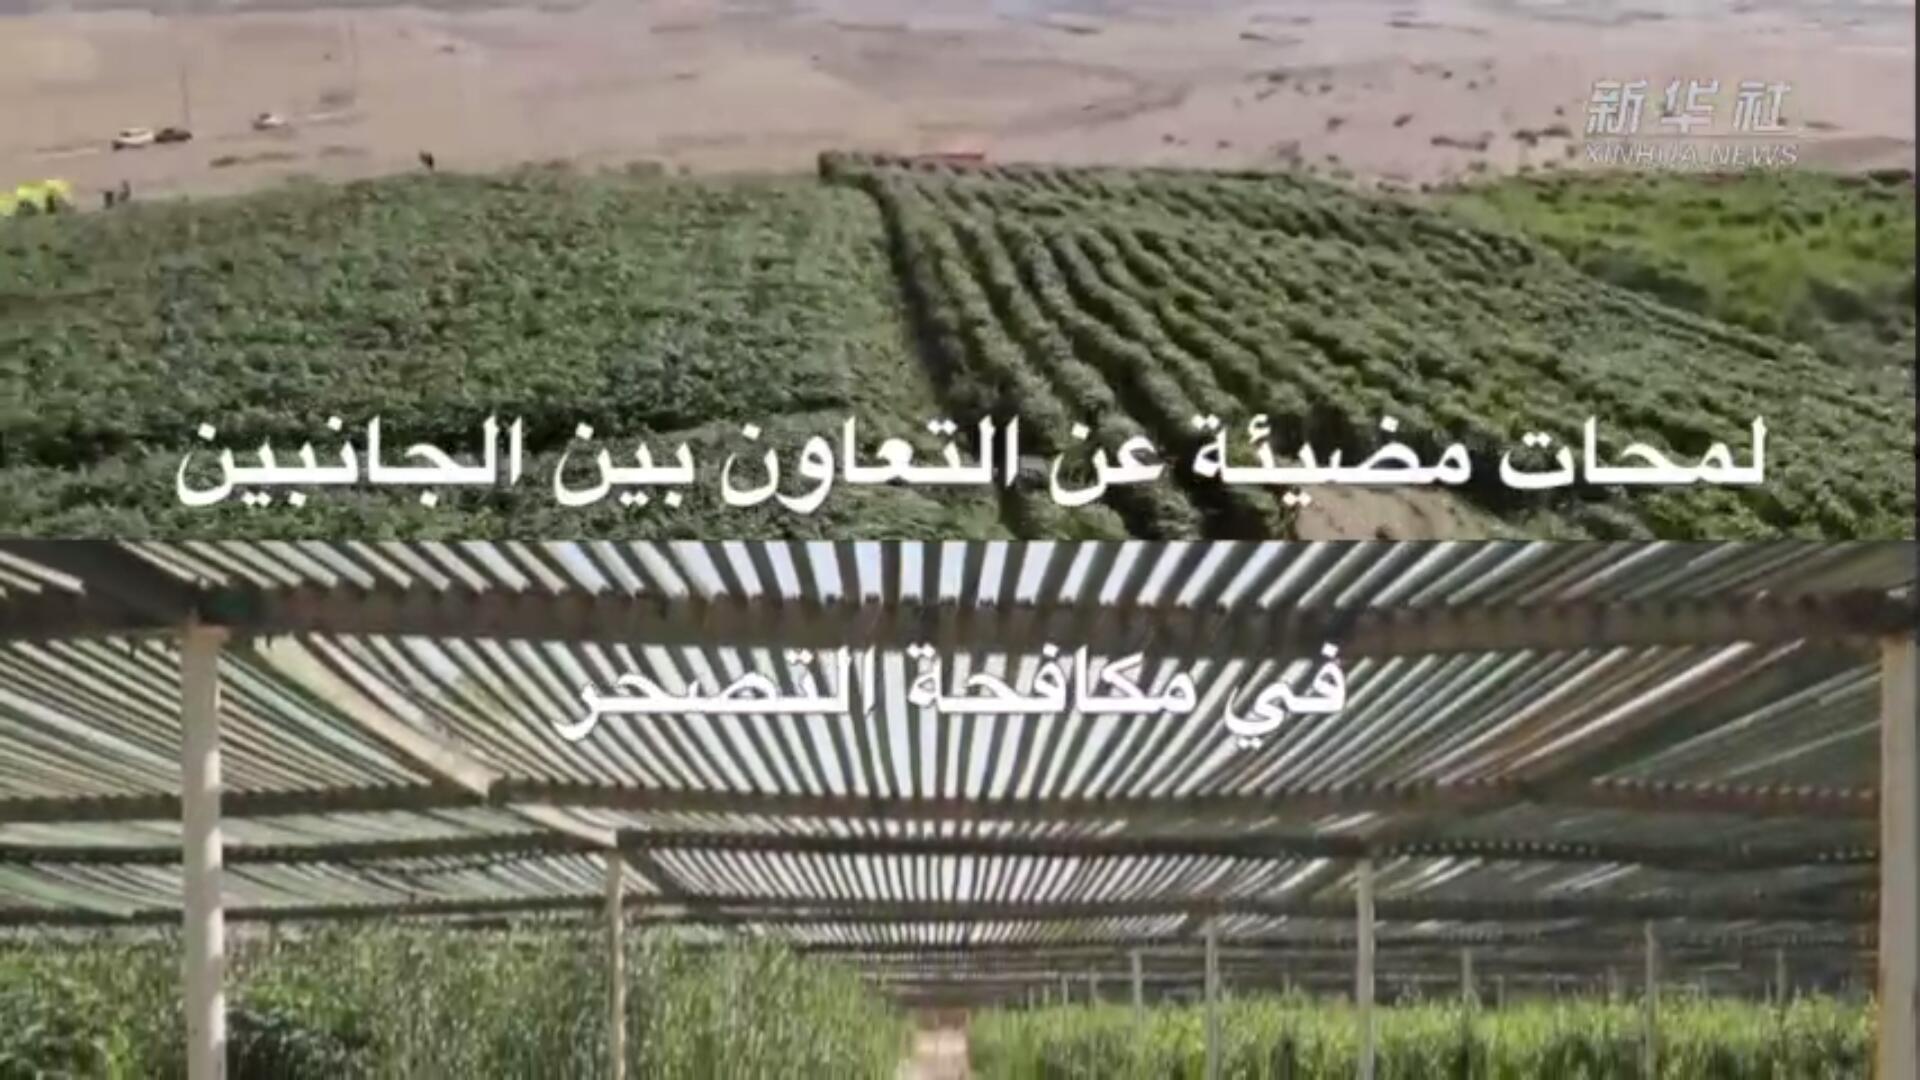 فيديو: في اليوم العالمي لمكافحة التصحر والجفاف... لمحات مضيئة عن التعاون الصيني العربي في هذا المجال